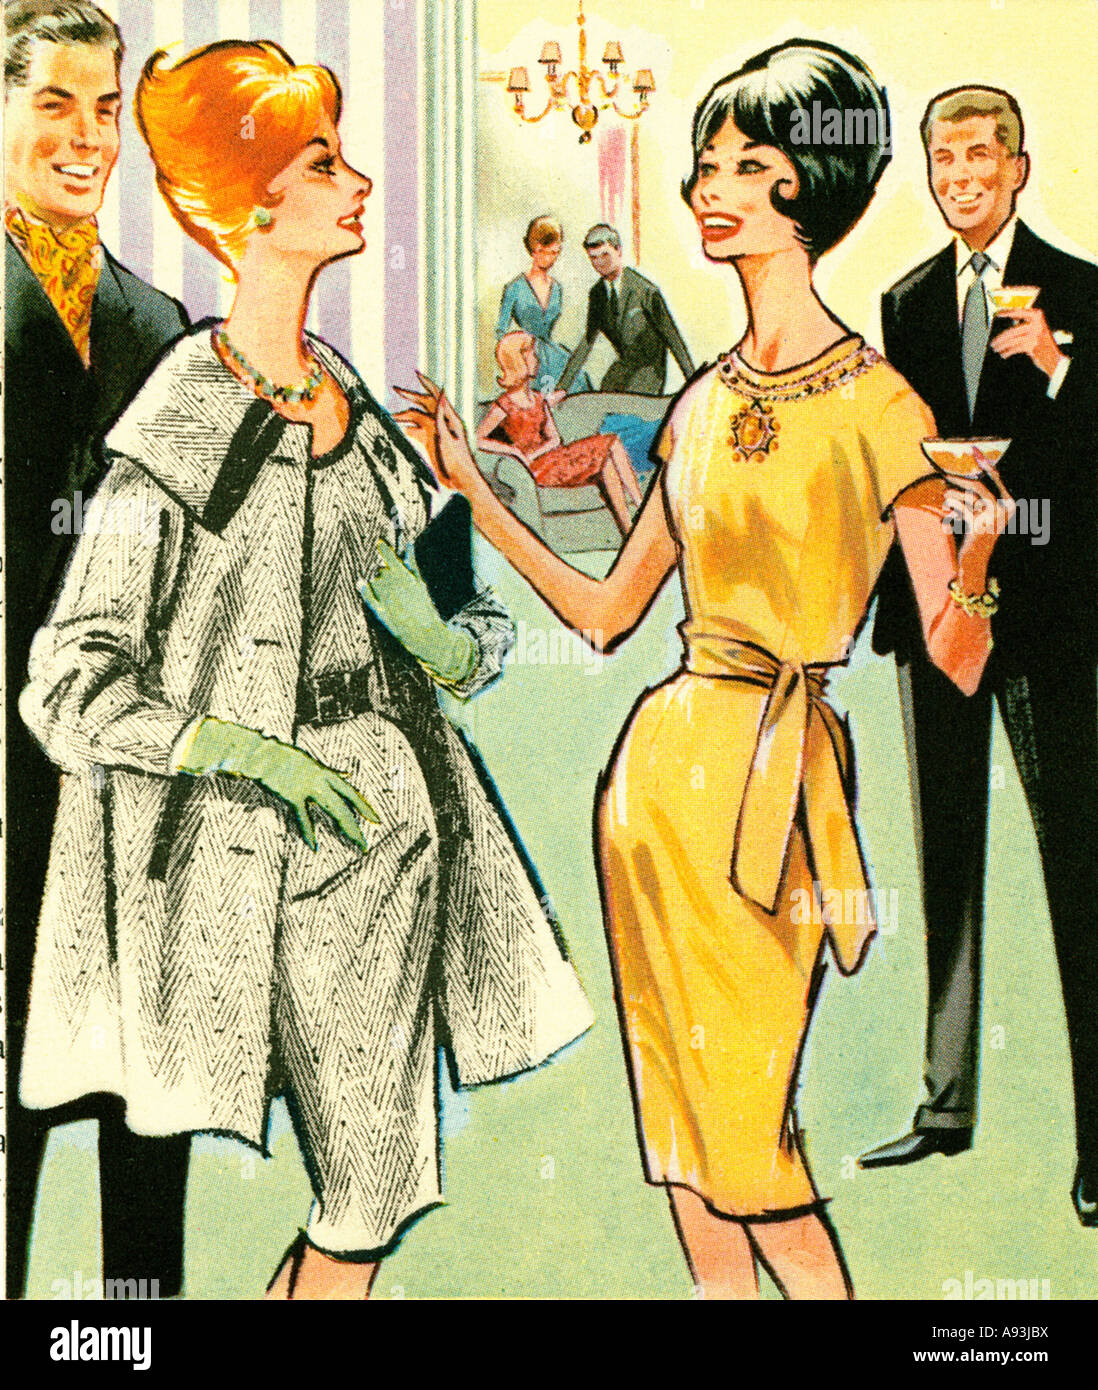 Champagner Empfang 1961 Mode-Illustration von glücklichen Eindruck auf einer party Stockfoto